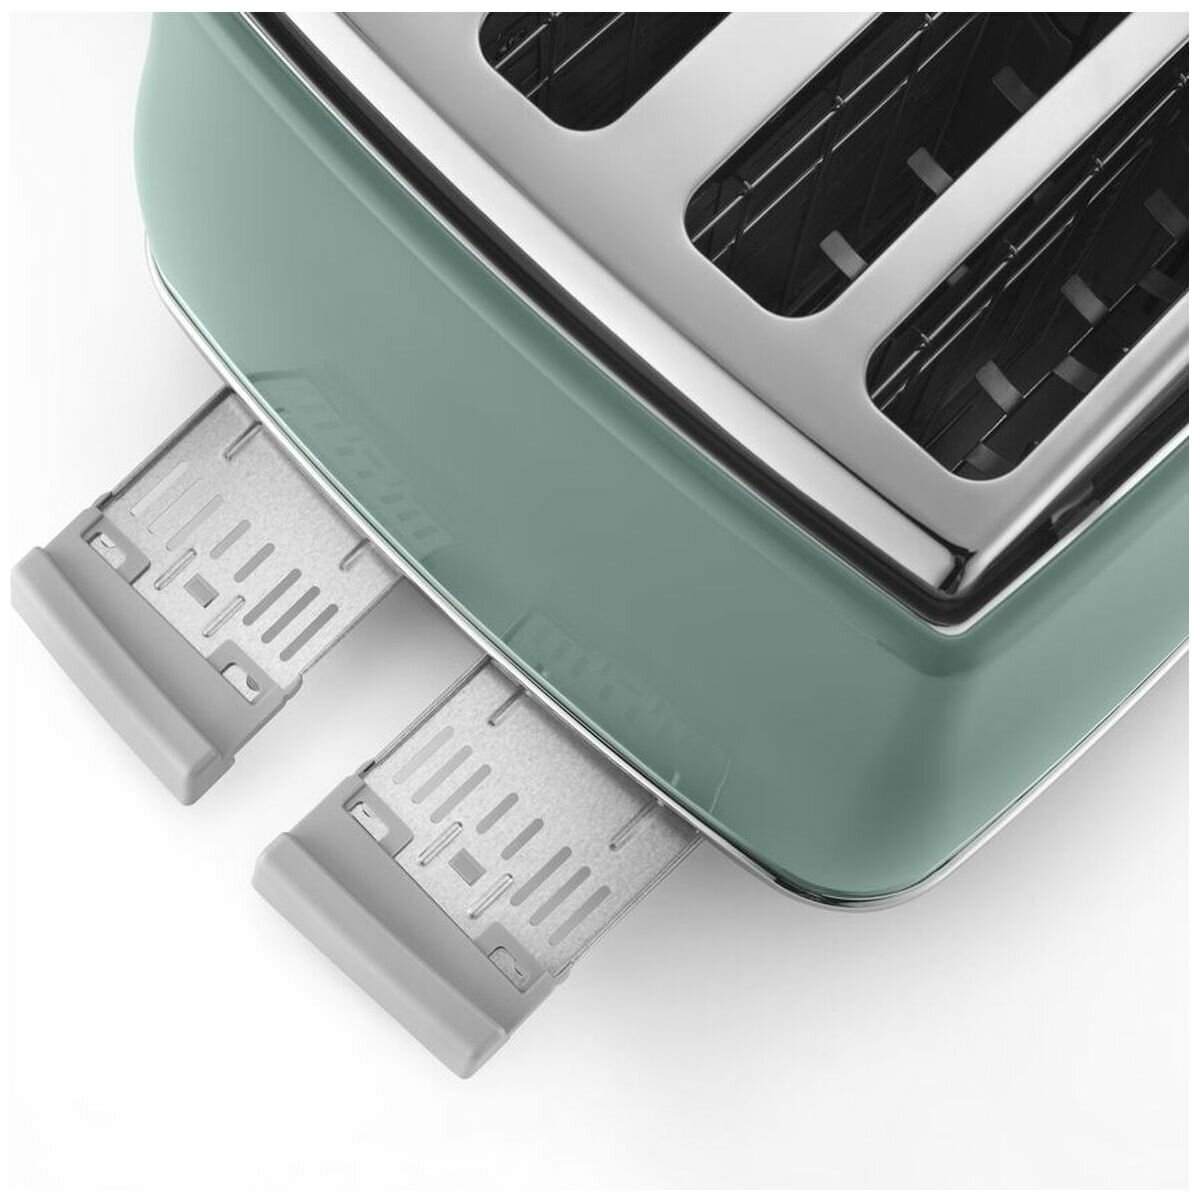 Delonghi Toaster CTOV 4003gr.   Green kitchen  accessories, Green kitchen appliances, Sage green kitchen